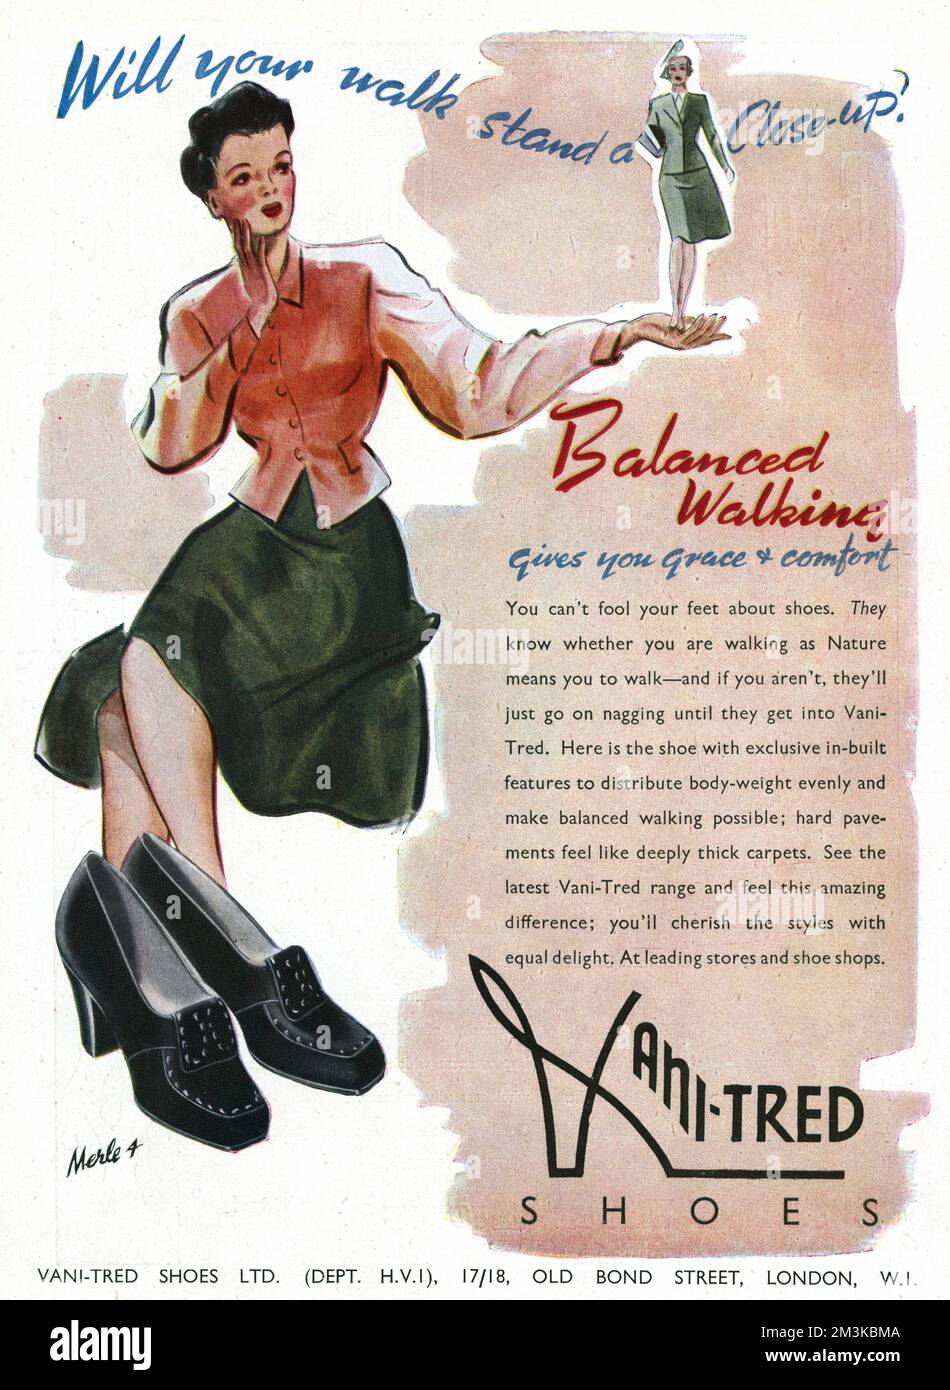 'Wird dein Gang eine Nahaufnahme machen'. „Ausgewogenes Gehen verleiht Ihnen Anmut und Komfort“. Du kannst deine Füße nicht über Schuhe täuschen. Sie wissen, ob man spinnt, weil man laufen muss - und wenn nicht, werden sie einfach weiter nörgeln, bis sie Vani-tred bekommen Datum: 1943 Stockfoto